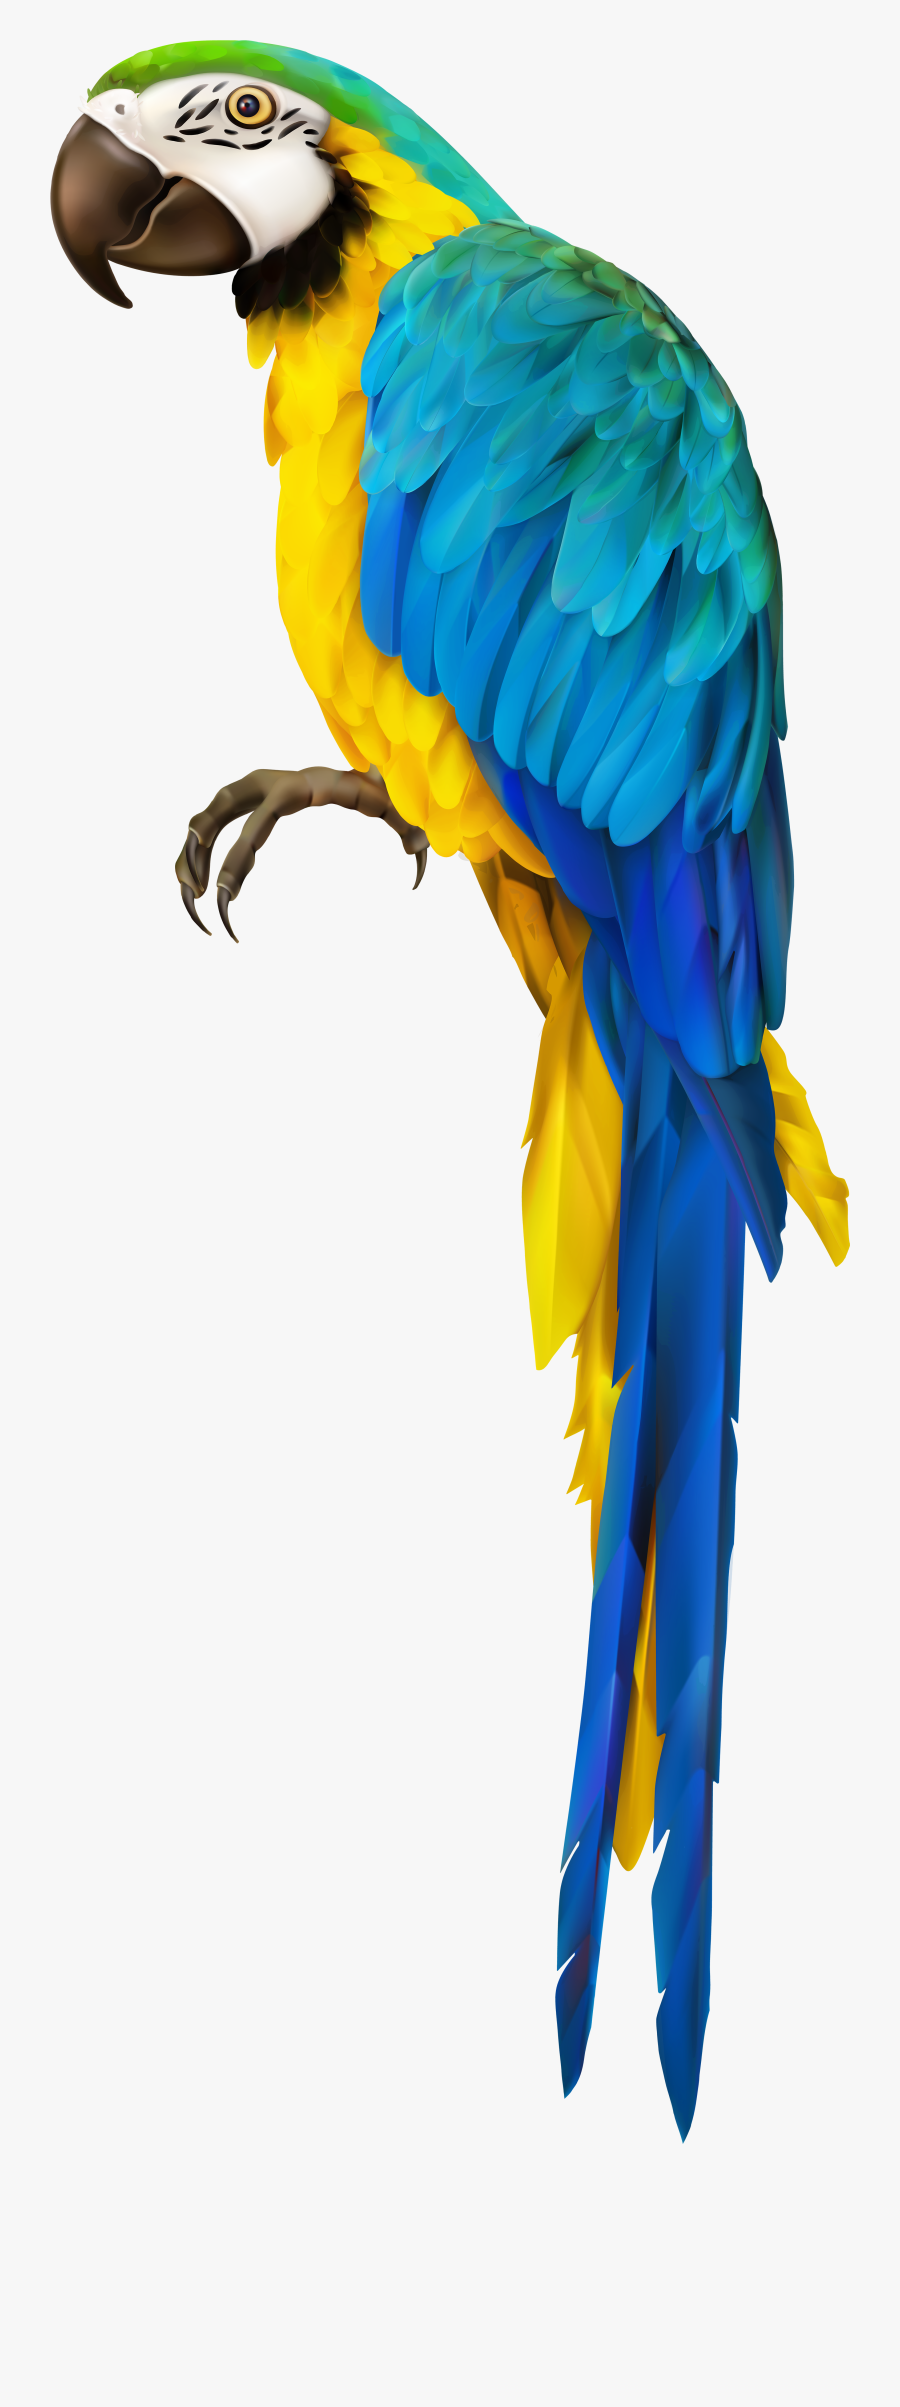 Parrot Clipart Happy - Transparent Background Macaw Clipart, Transparent Clipart